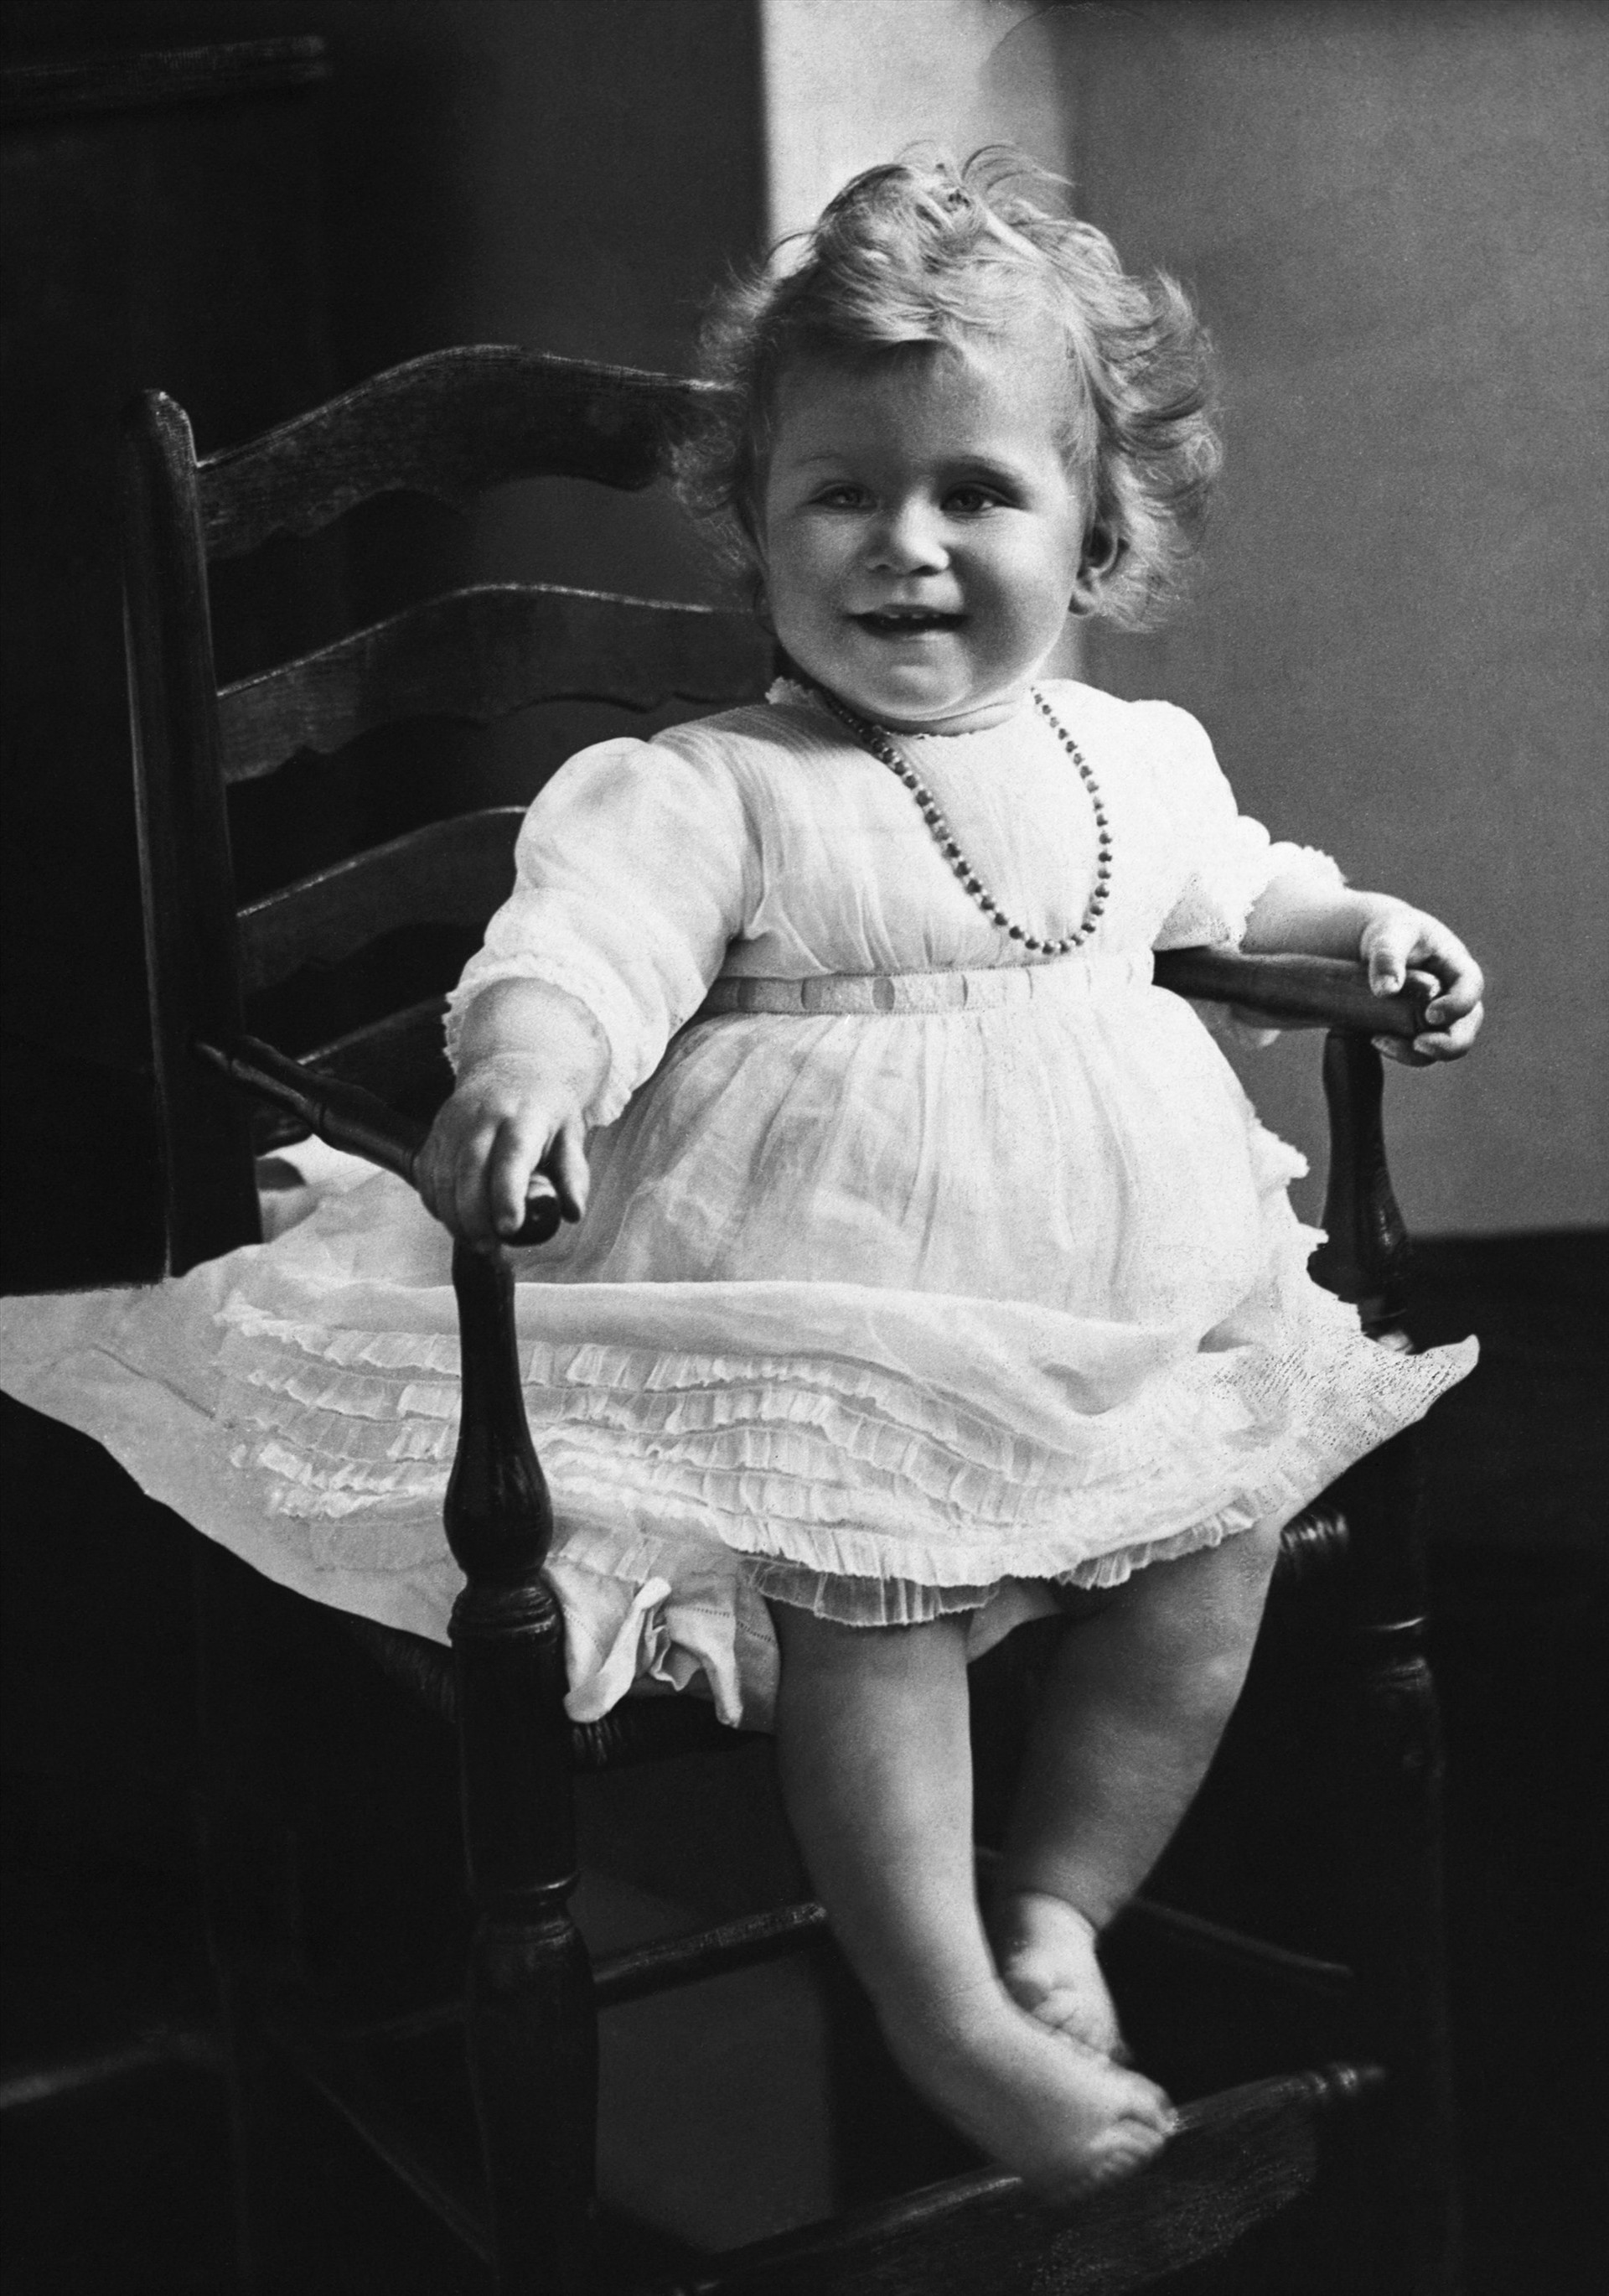 Nữ hoàng Elizabeth II khi còn mới biết đi chập chững vào năm 1927. Ảnh: townandcountrymag